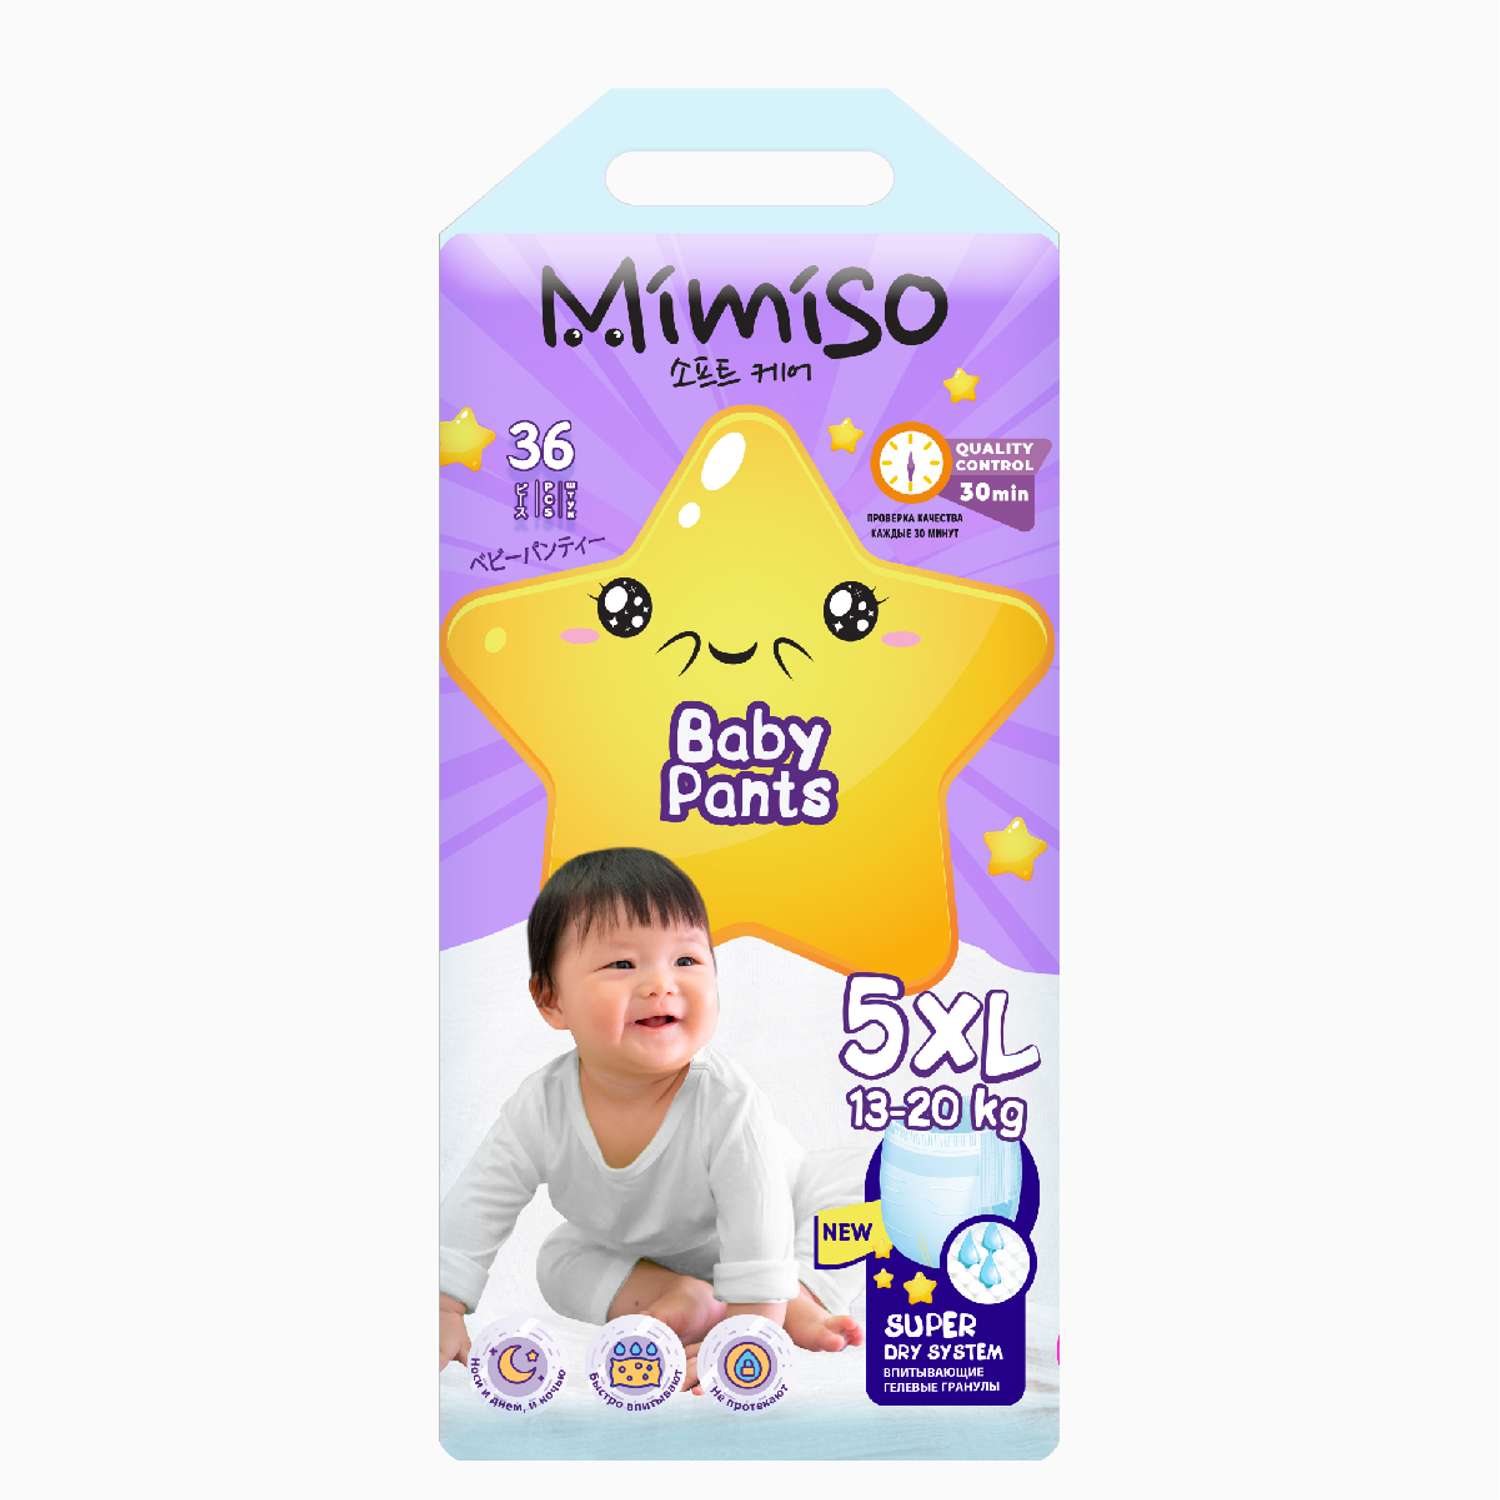 Трусики Mimiso одноразовые для детей 5/XL 13-20 кг 36шт - фото 3